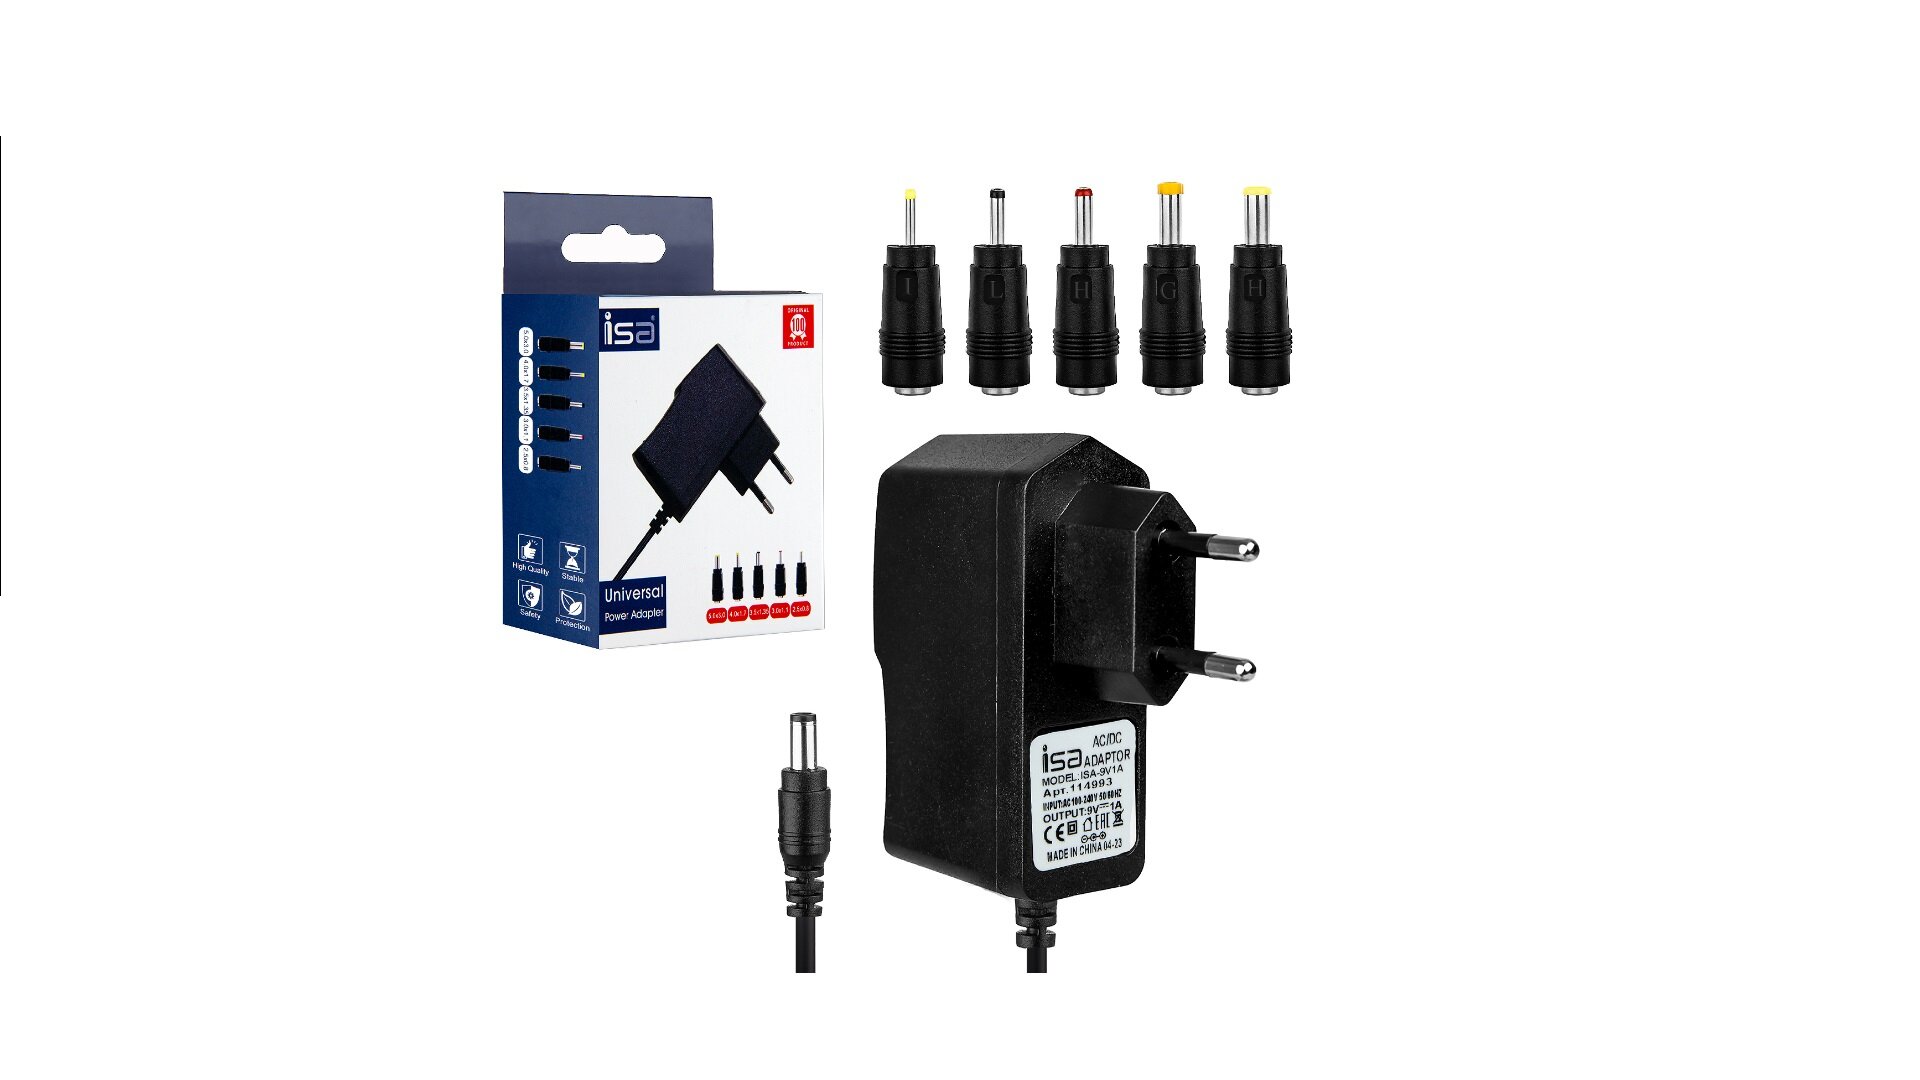 Универсальное зарядное устройство адаптер ISA Universal AC Adapter 9V/1A 6 штекеров (5.5х2.5/5x3/ 4x1.7/3.5x1.35/3x1.1/2.5x0.8)мм кабель 1 м